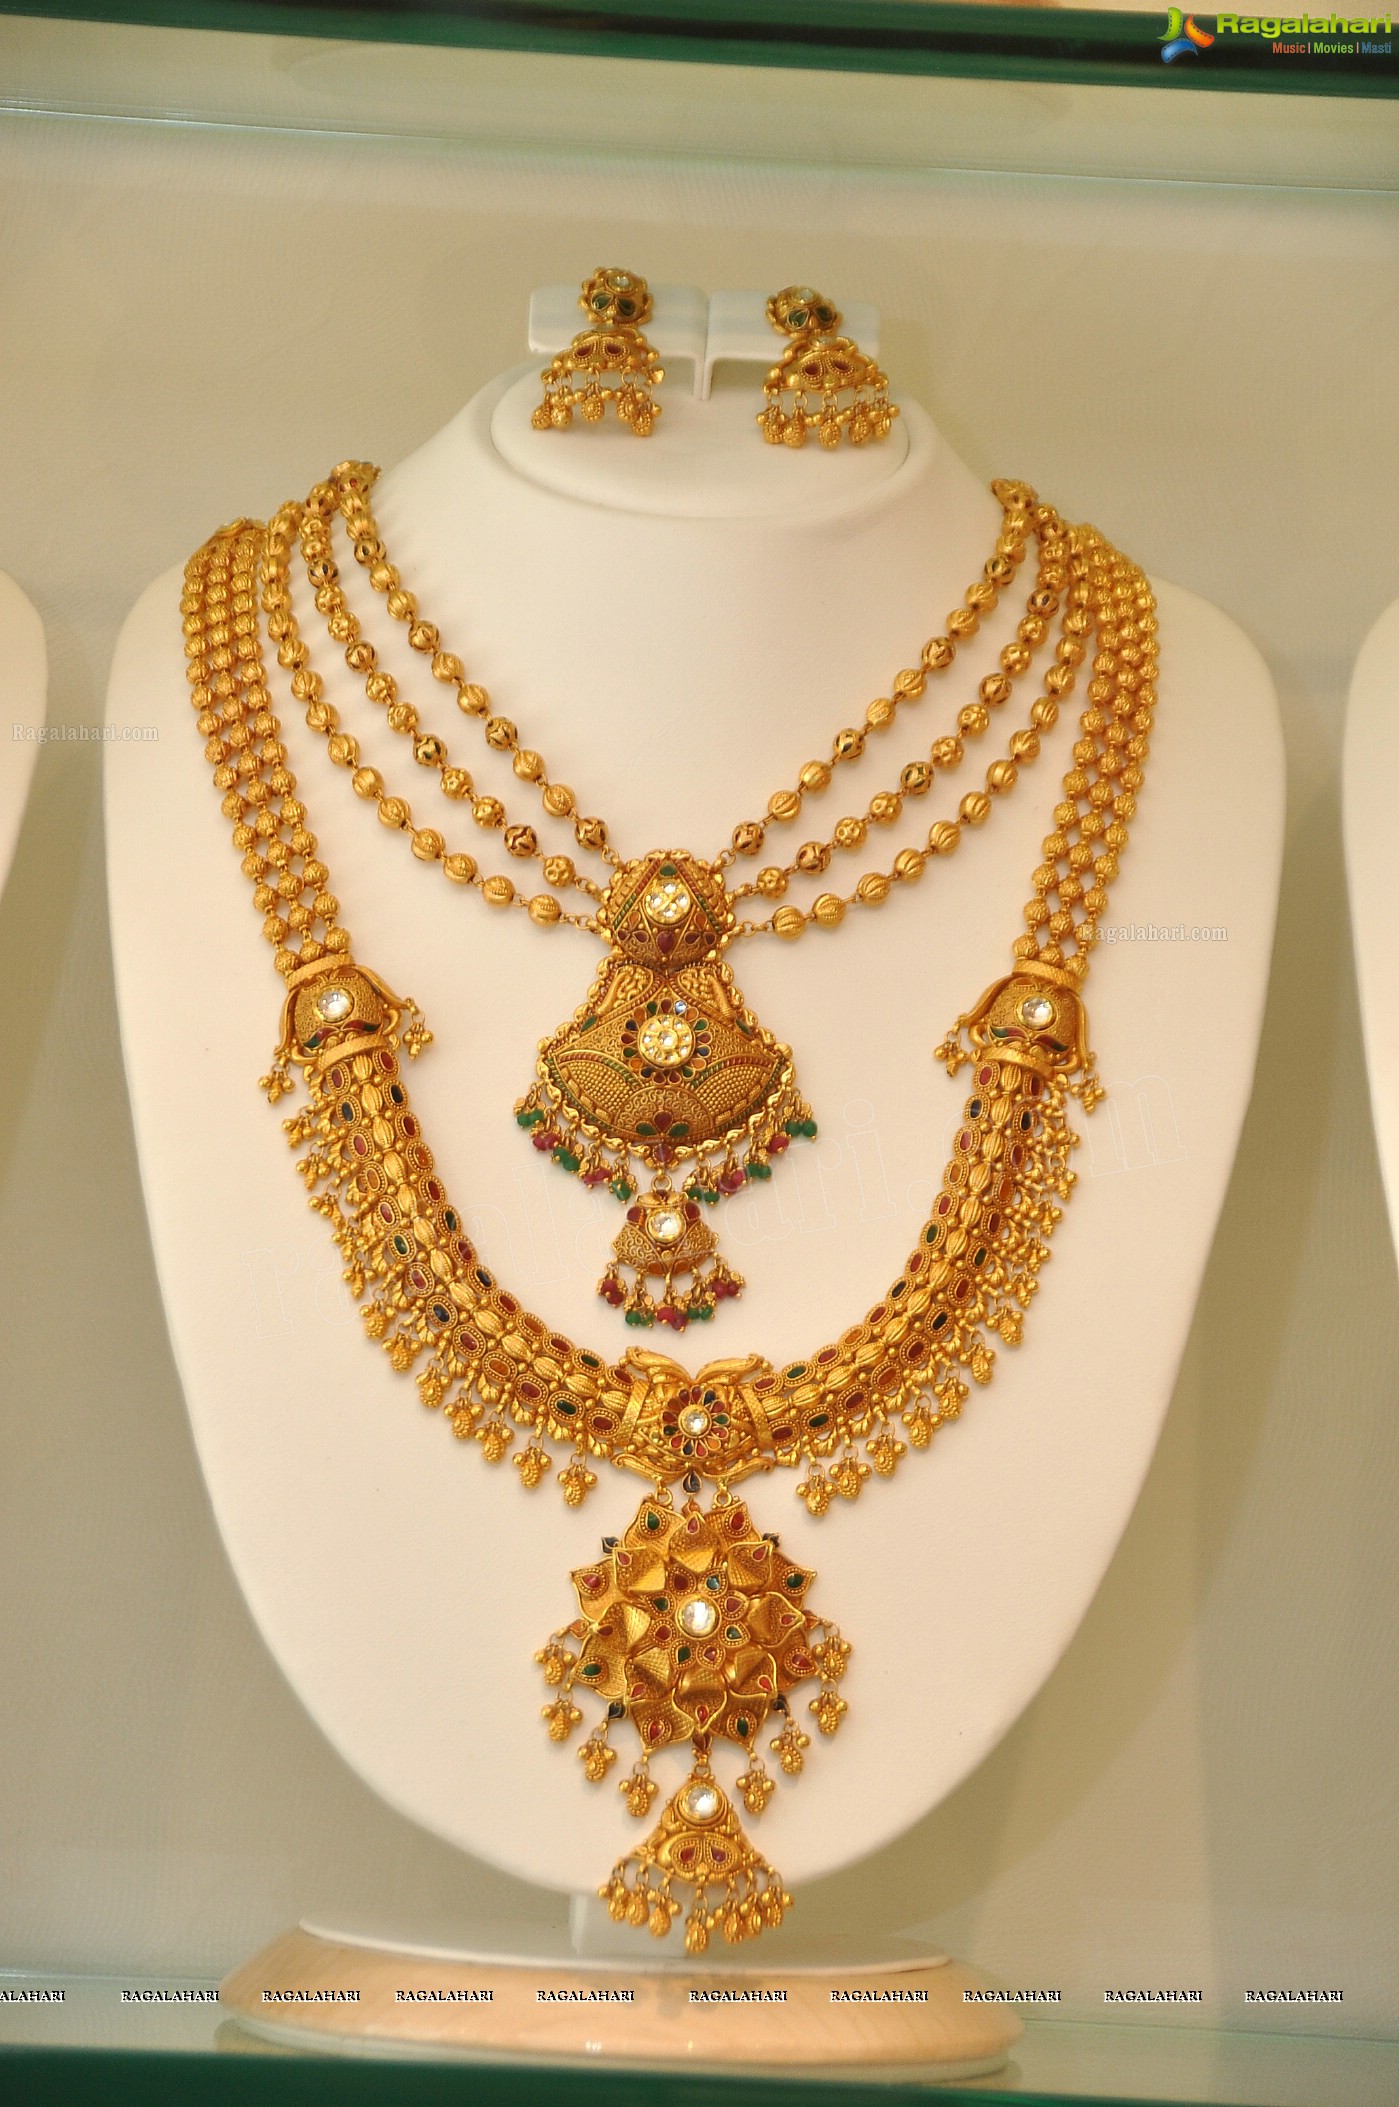 Khazana Jewellery Stores launch at AS Rao Nagar, Hyderabad